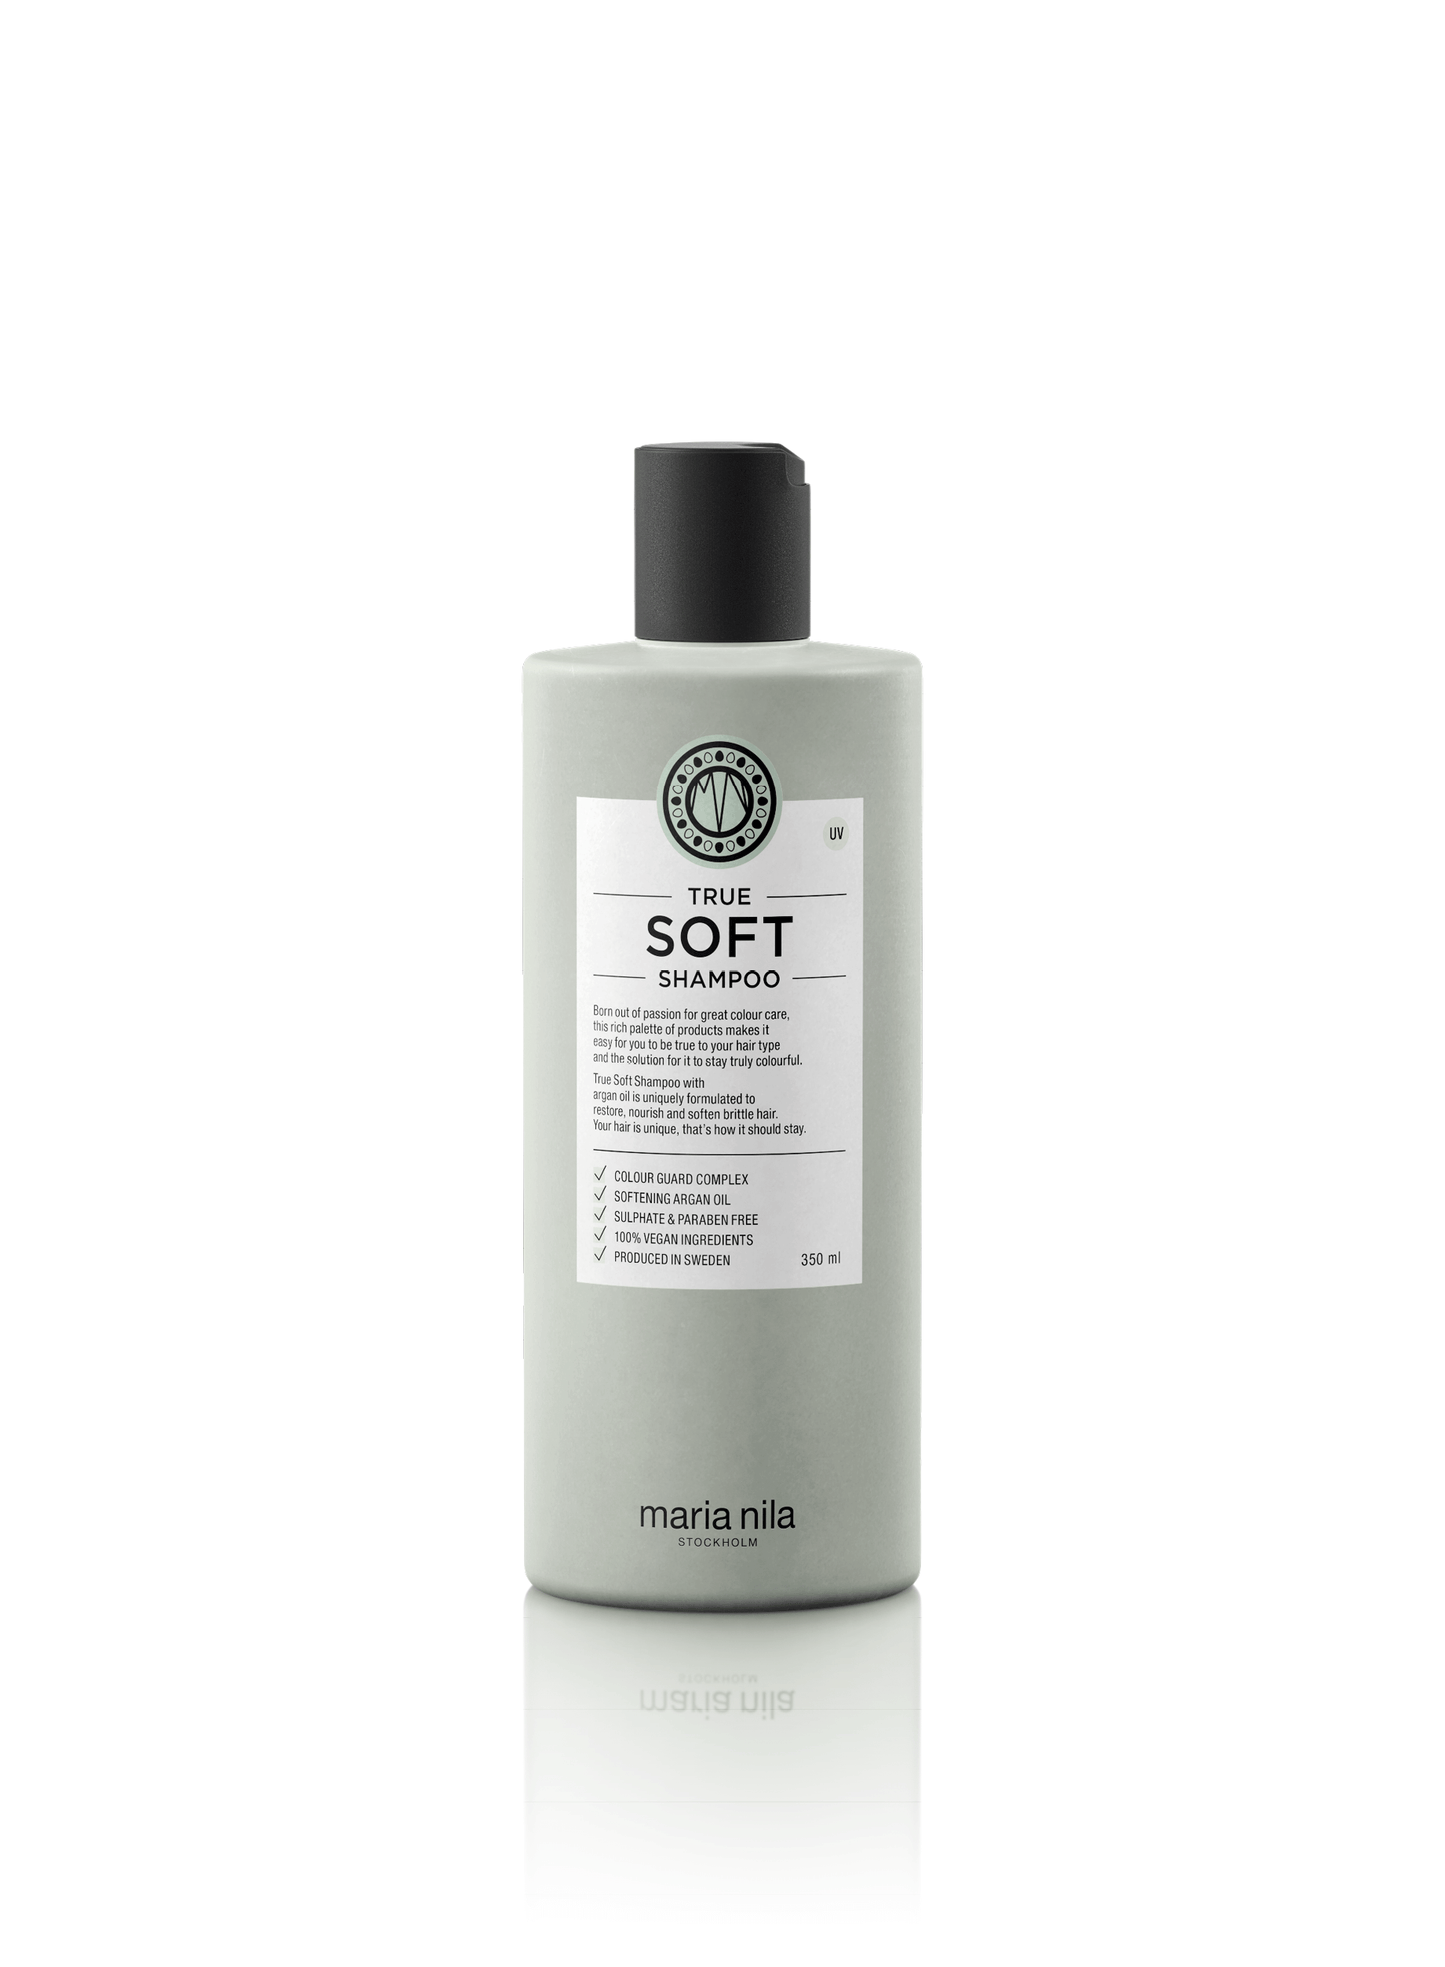 True Soft - Shampoo - Maria Nila